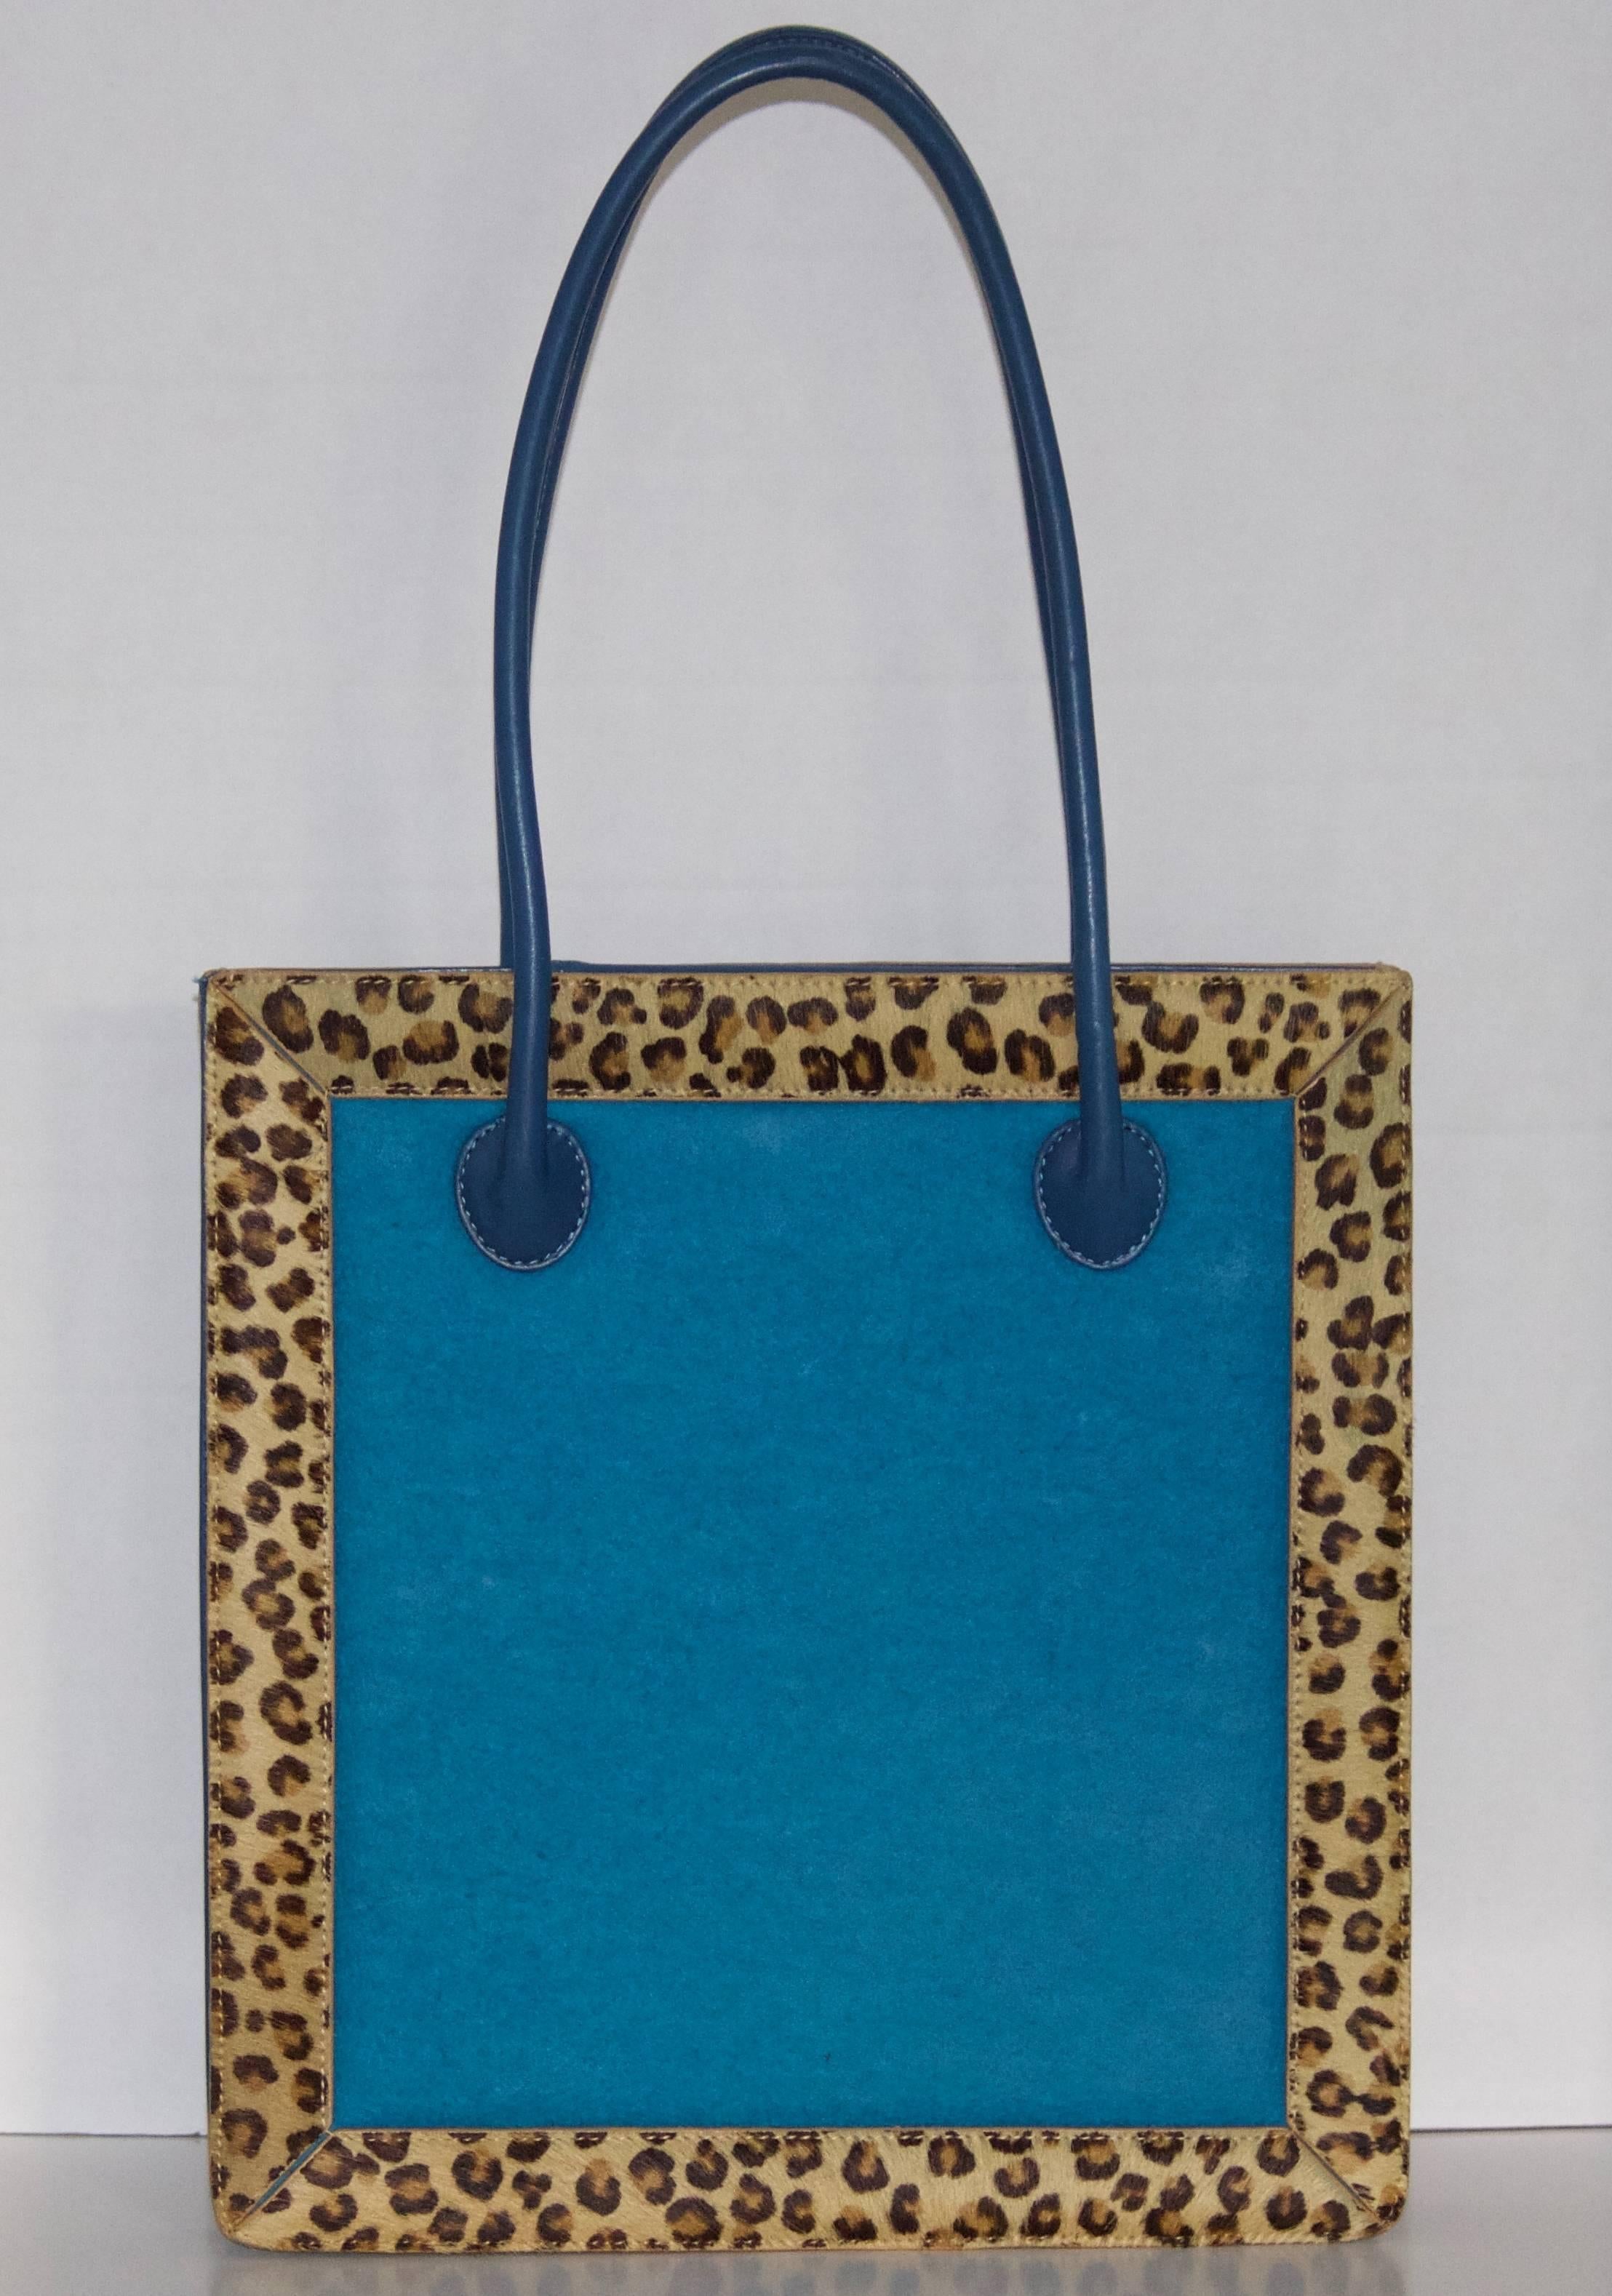 Embroidered Artful Vintage Nicole Miller Leather Handbag-Leopard Calf Hair Fur Trim For Sale